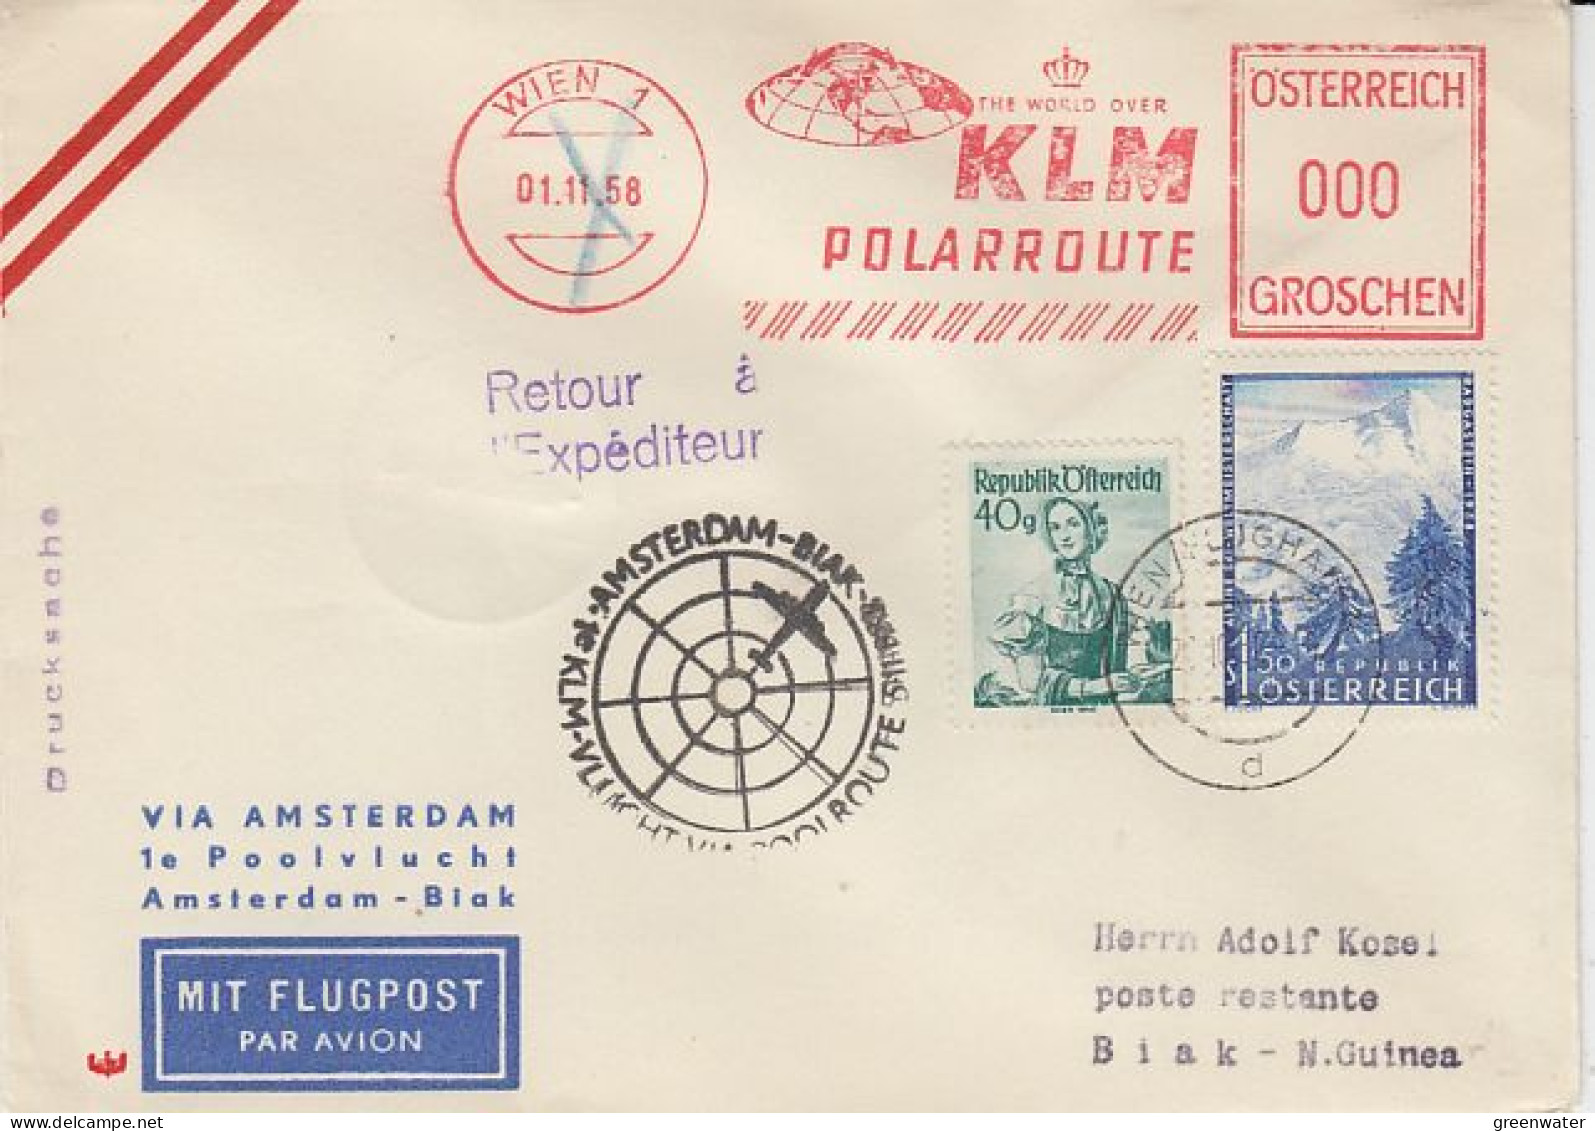 Austria 1958 KLM Polarroute 1st Flight Amsterdam- Biak New Guinea Cover (59621) - Cartas & Documentos